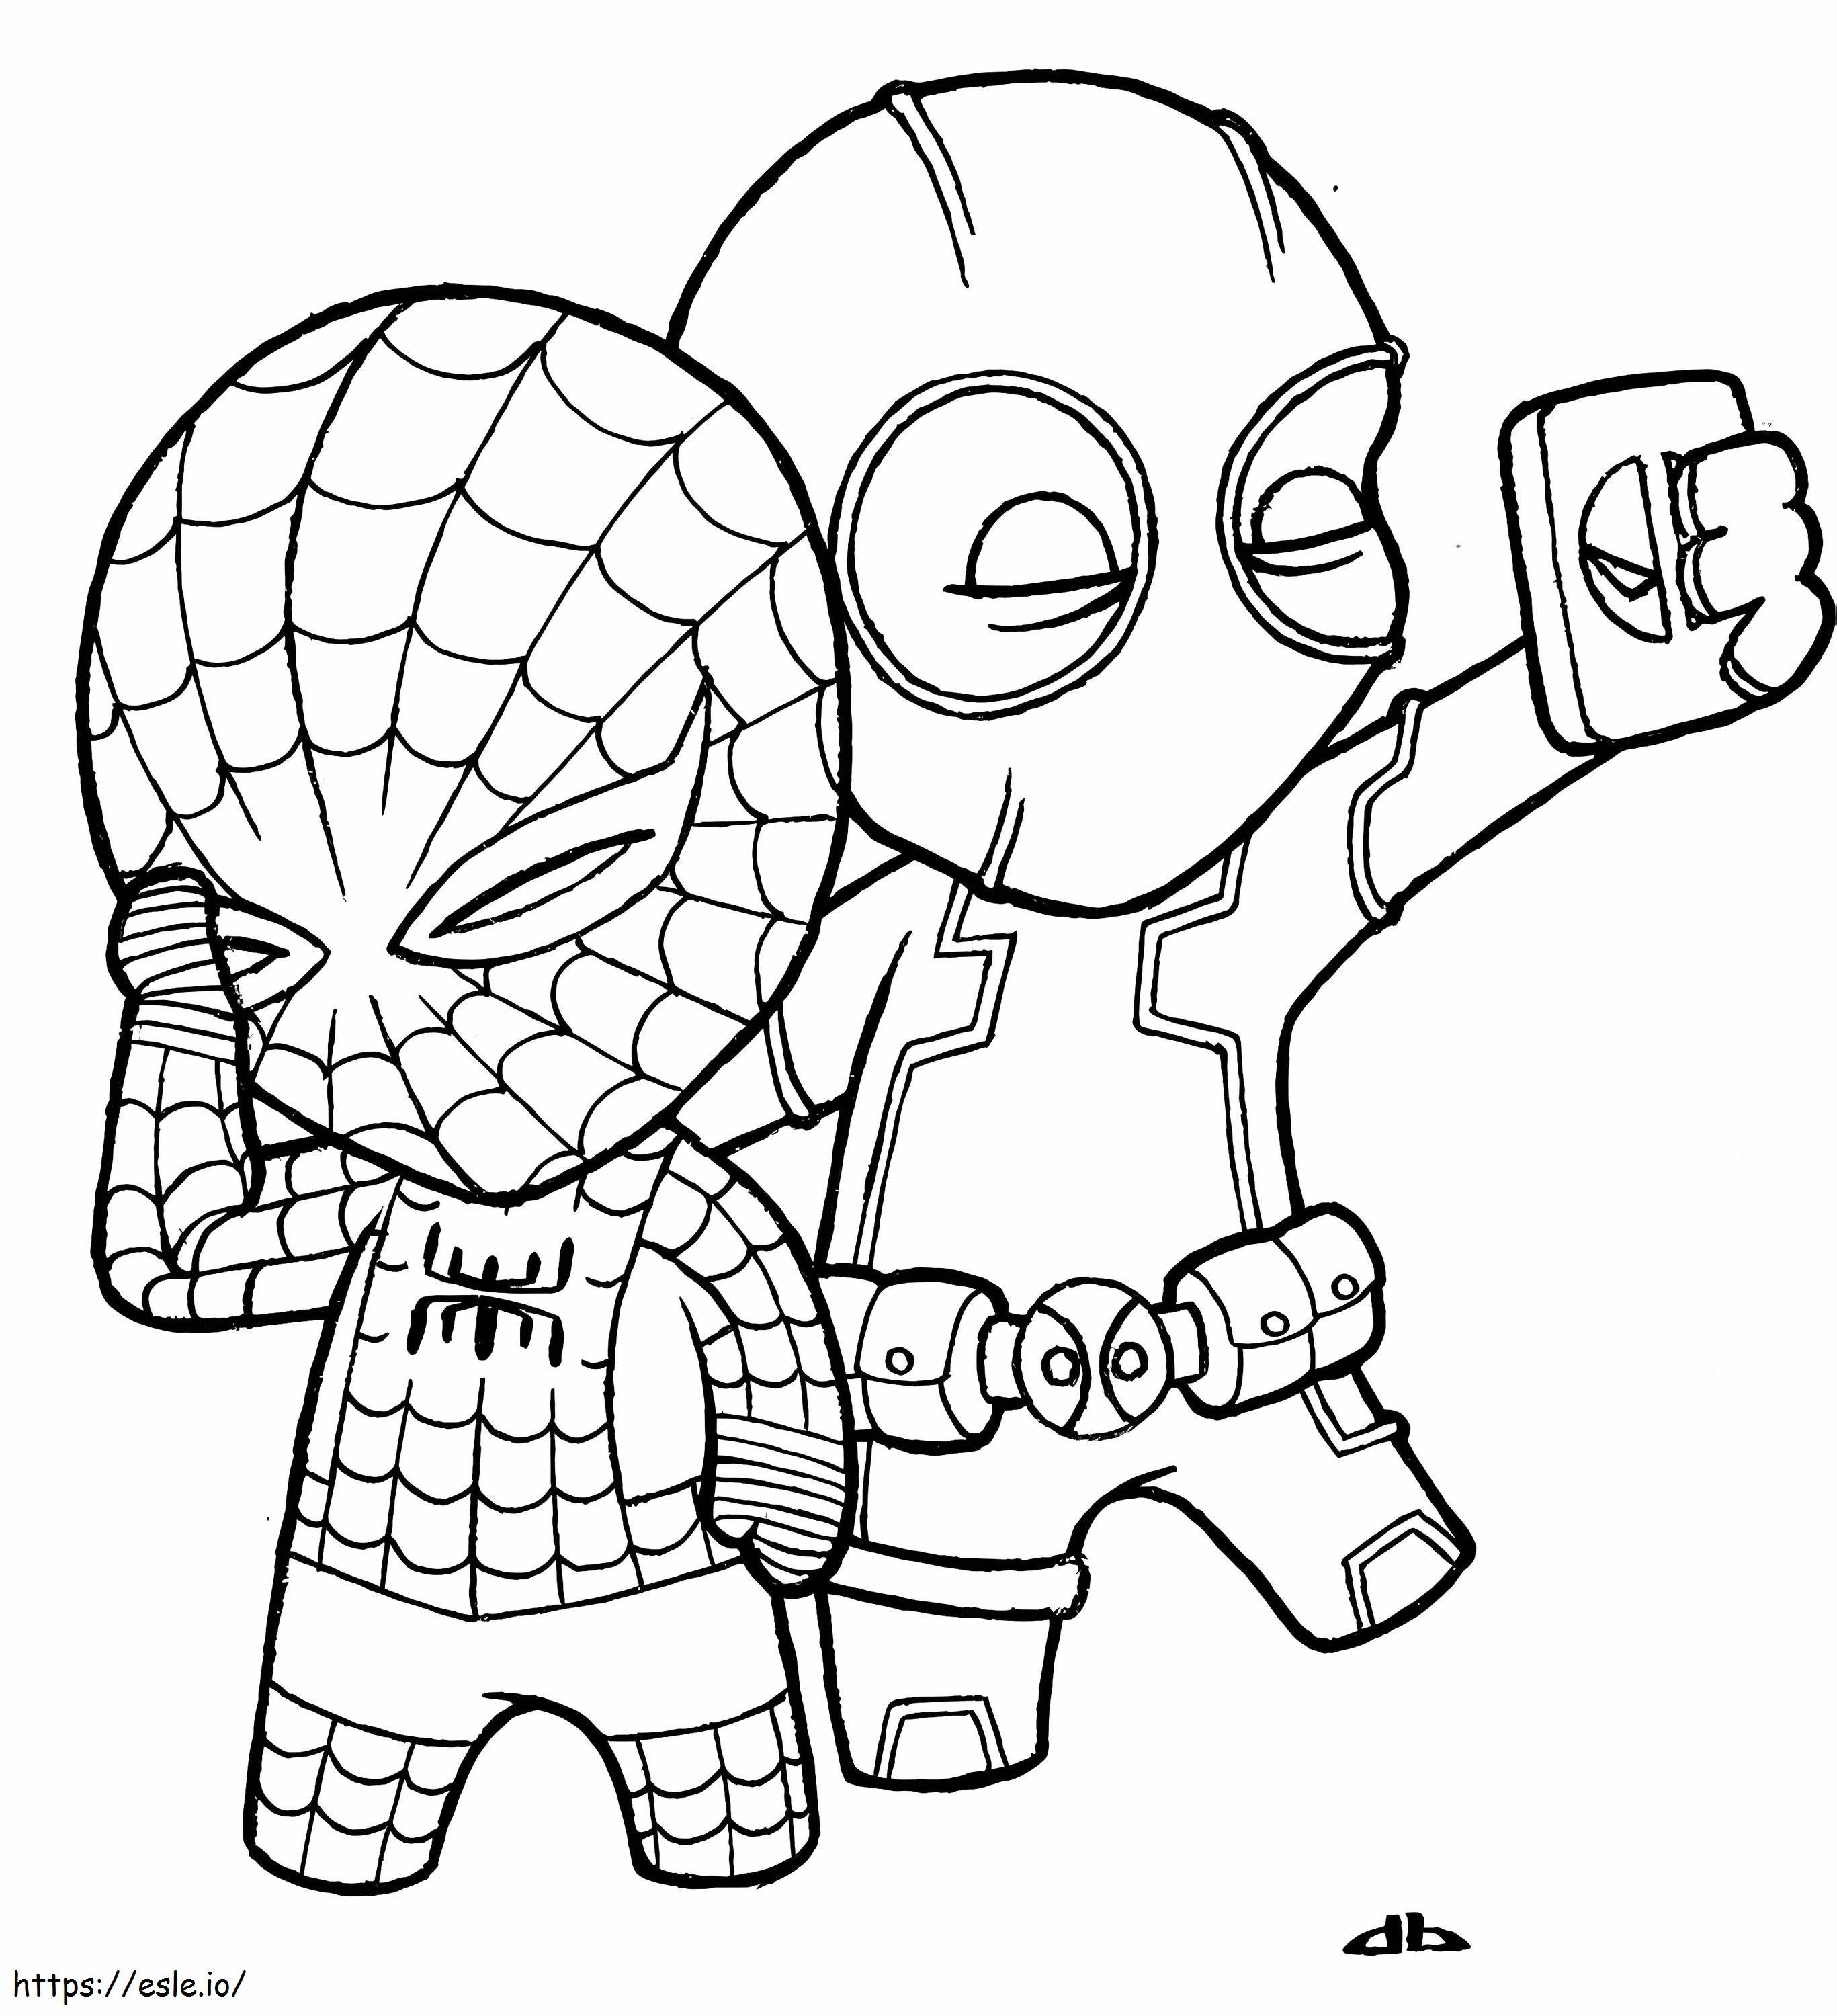  Najlepszy Chibi Spiderman z Deadpoolem Darmowy 3570 Showy At Deadpool kolorowanka